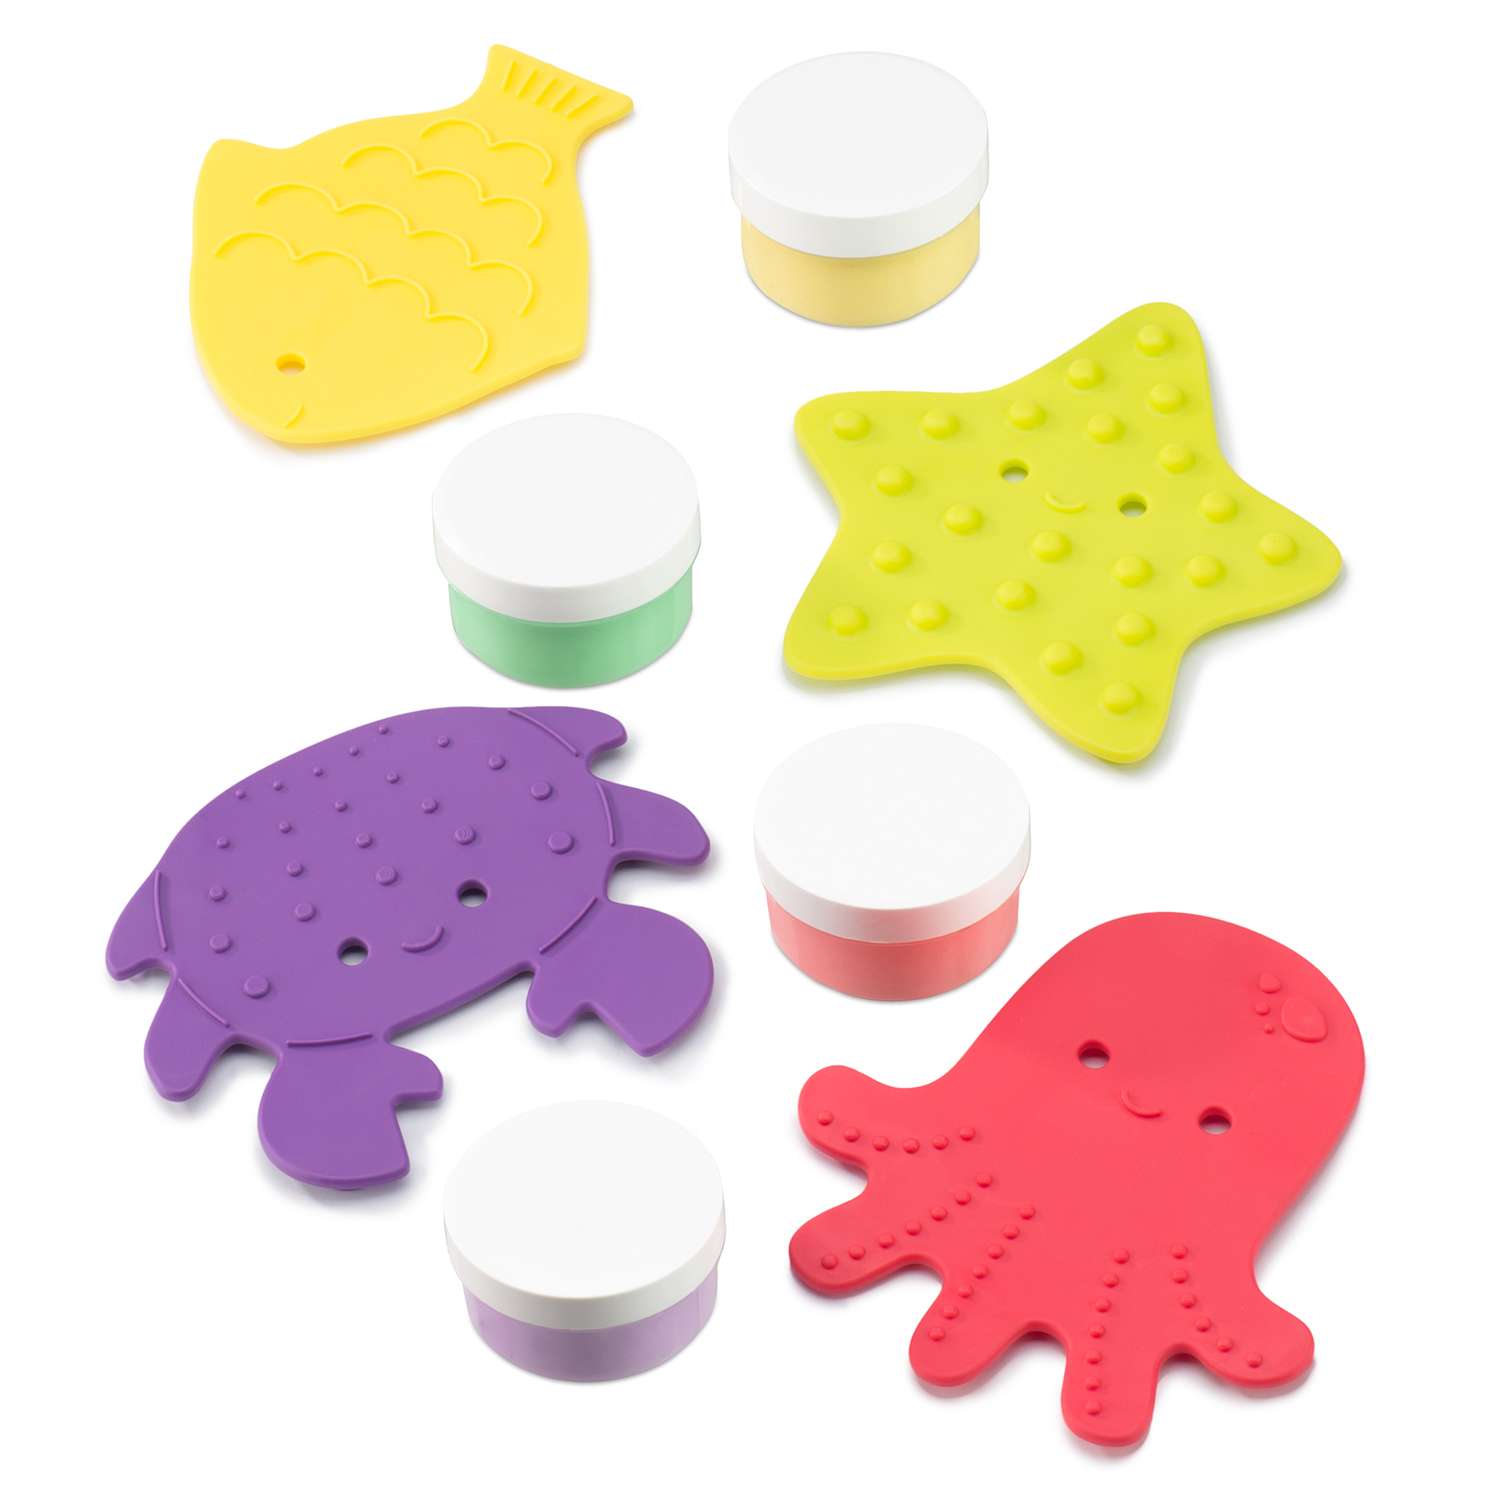 Мини-коврики детские ROXY-KIDS для ванной и пальчиковые краски 4шт х 4шт - фото 2